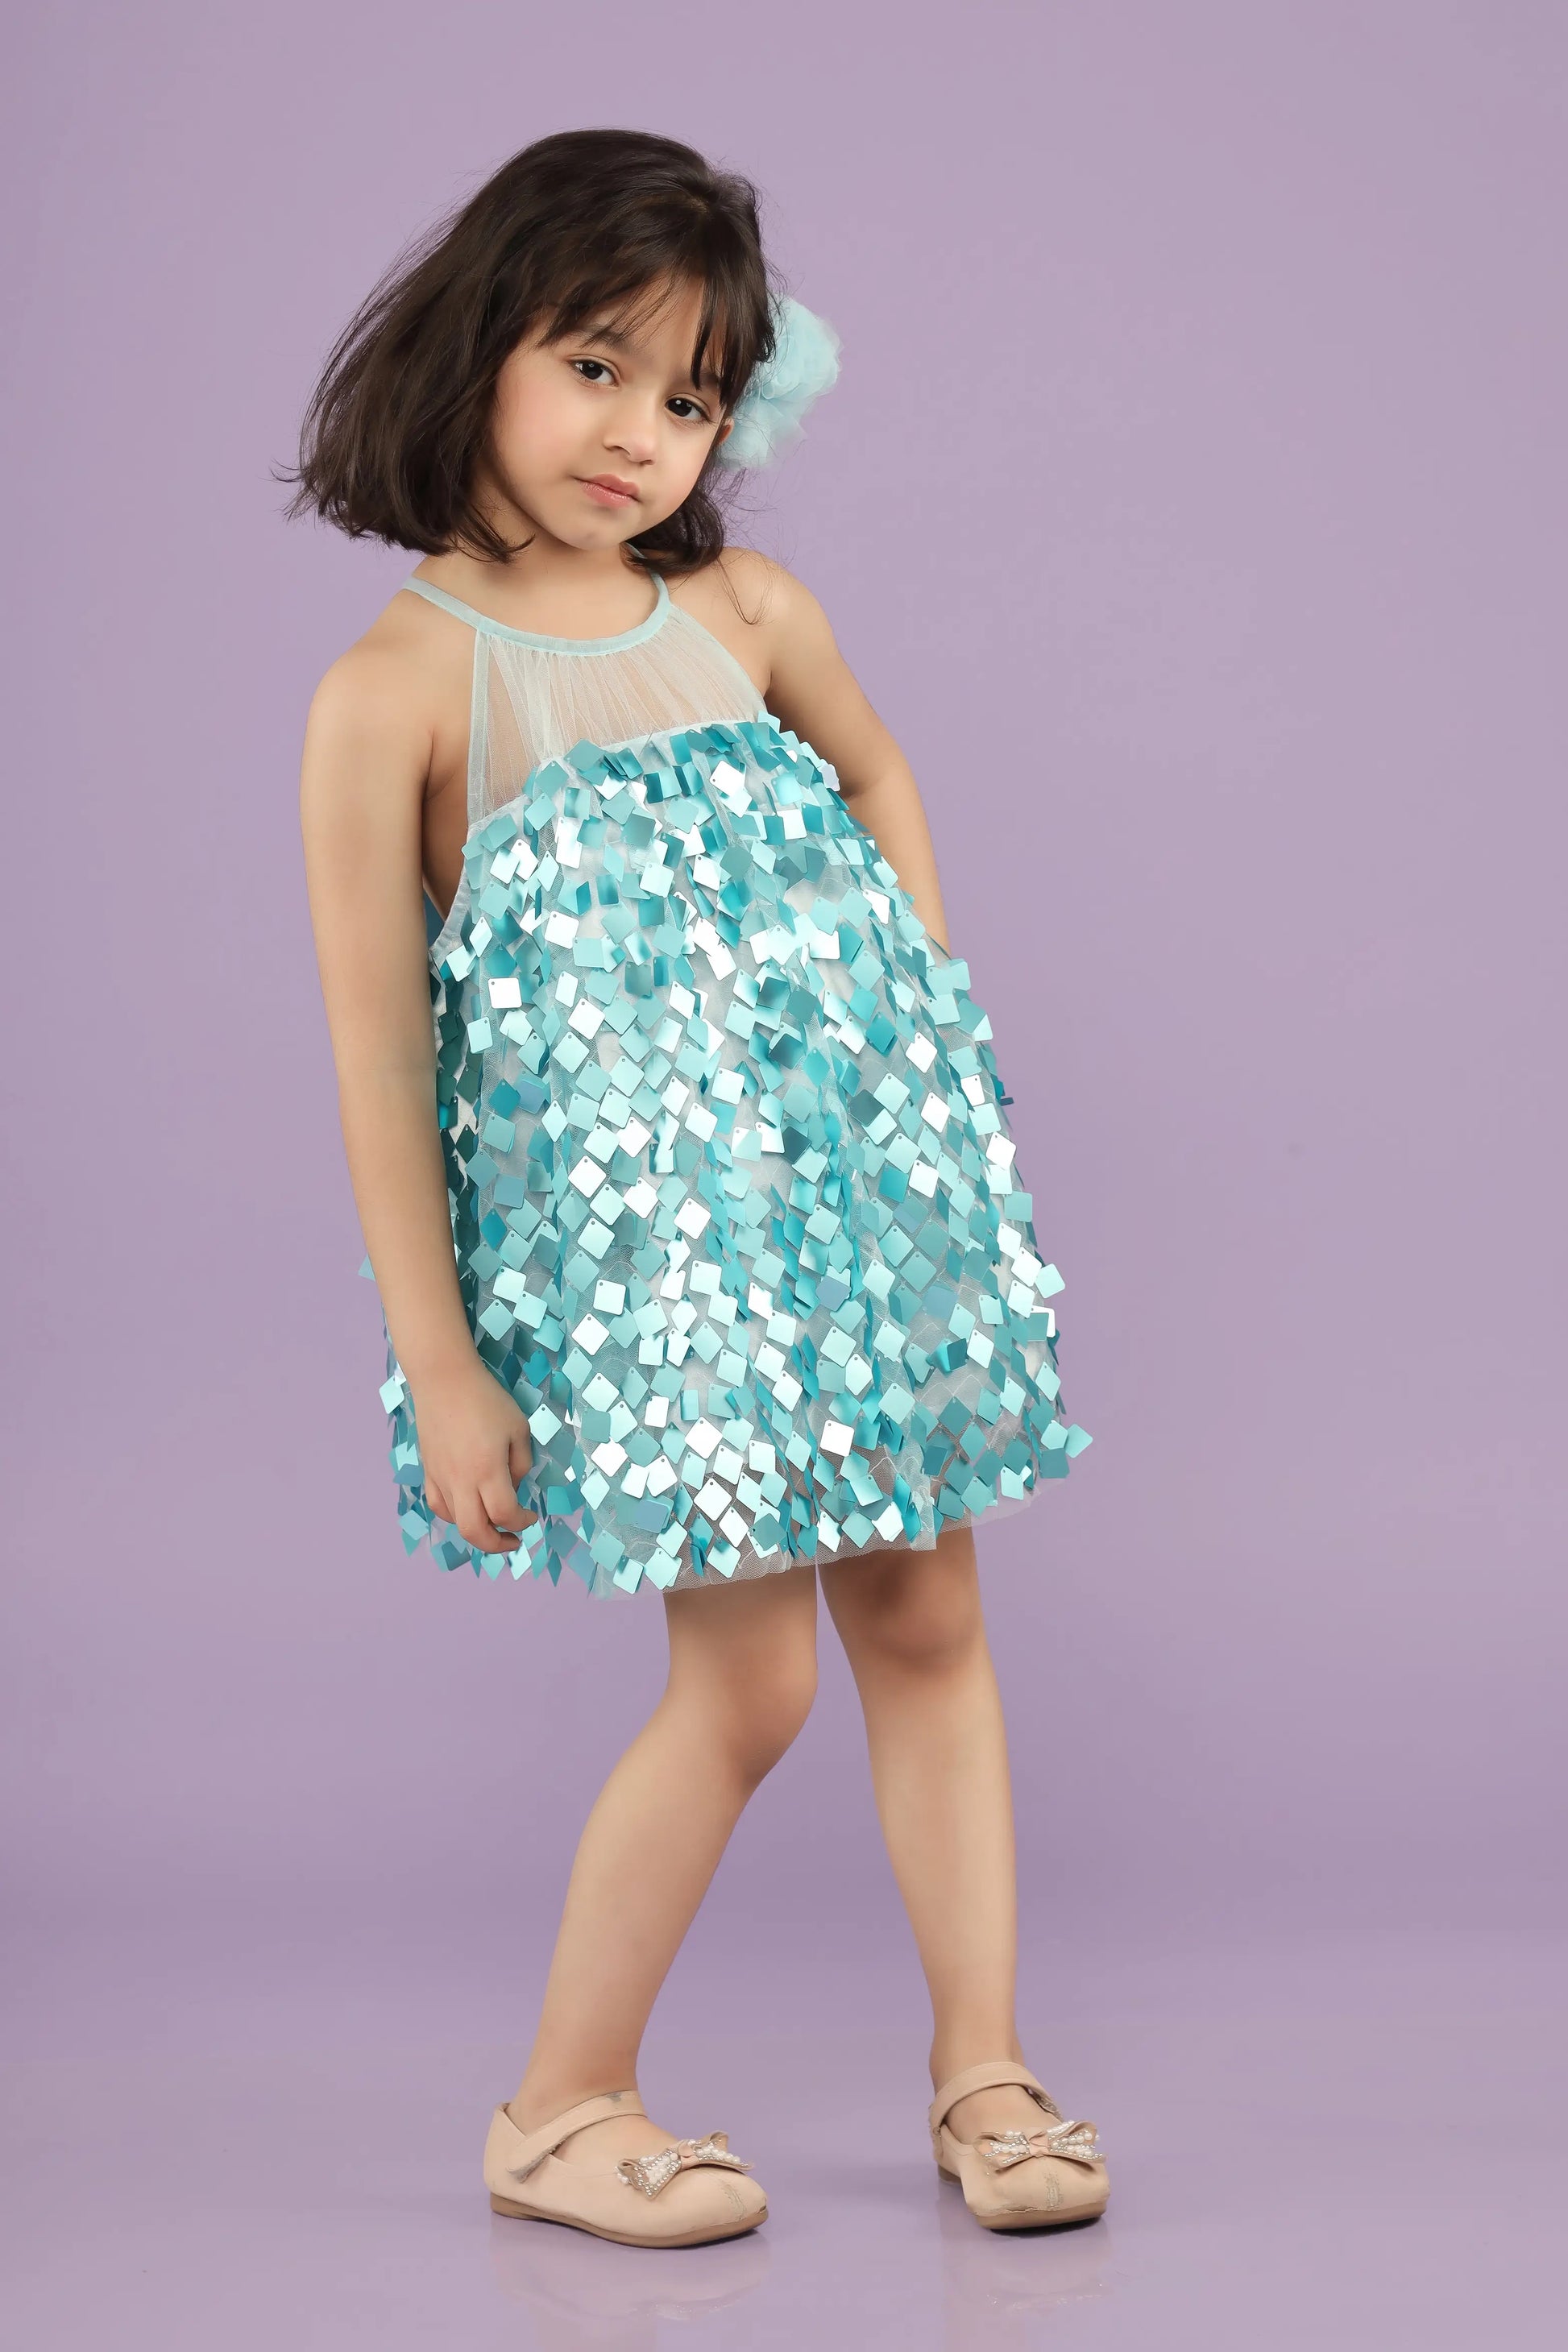 Blue Sparkler Tunic Dress for Little Girls